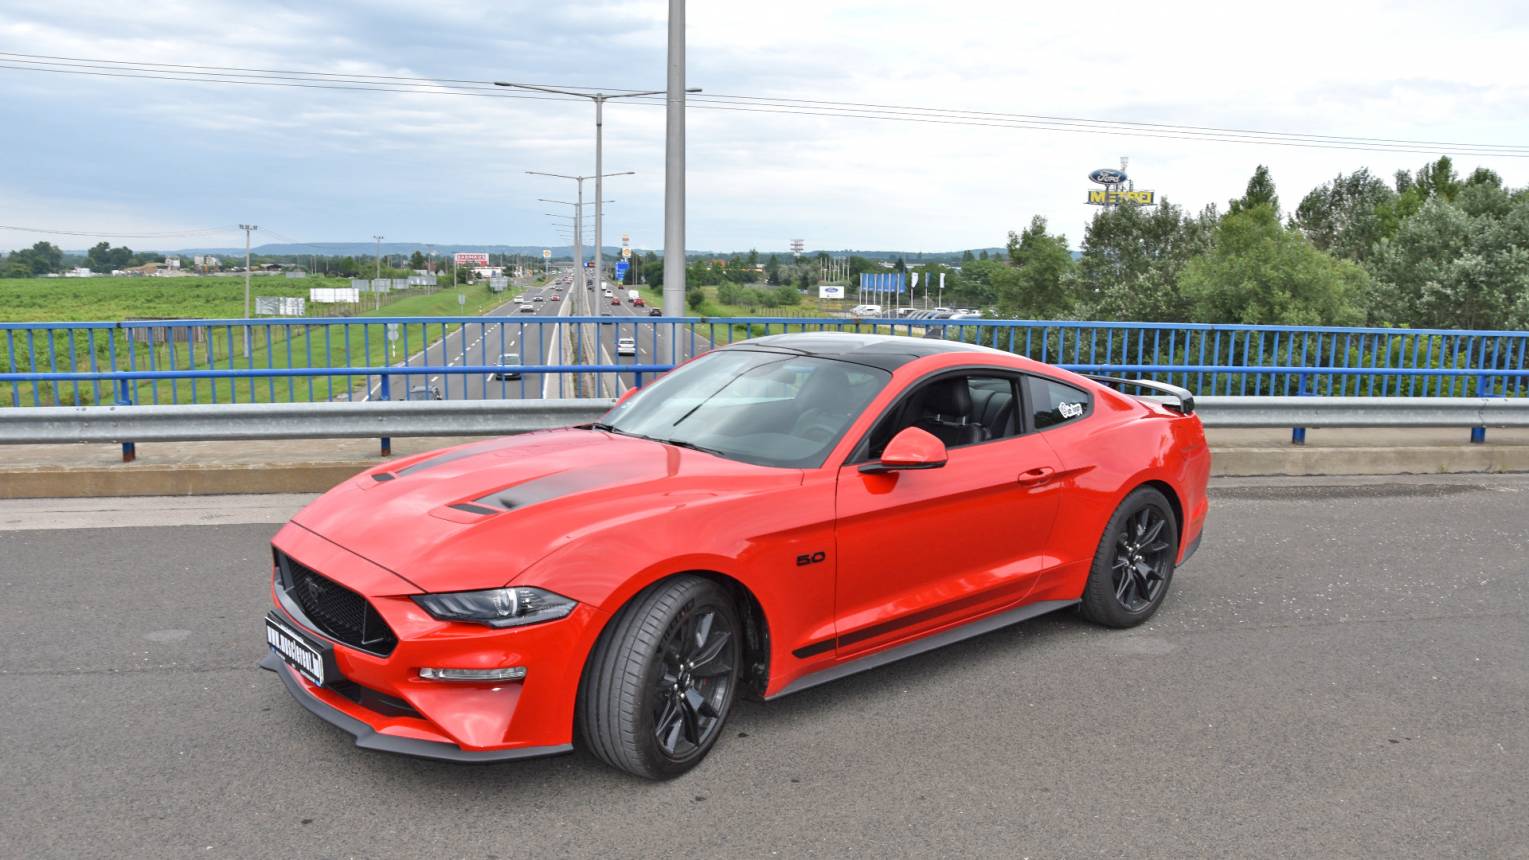 Mustang GT55 bérlés 1 hétre Debrecen, Eger, Miskolc és Nyíregyháza környékén 2